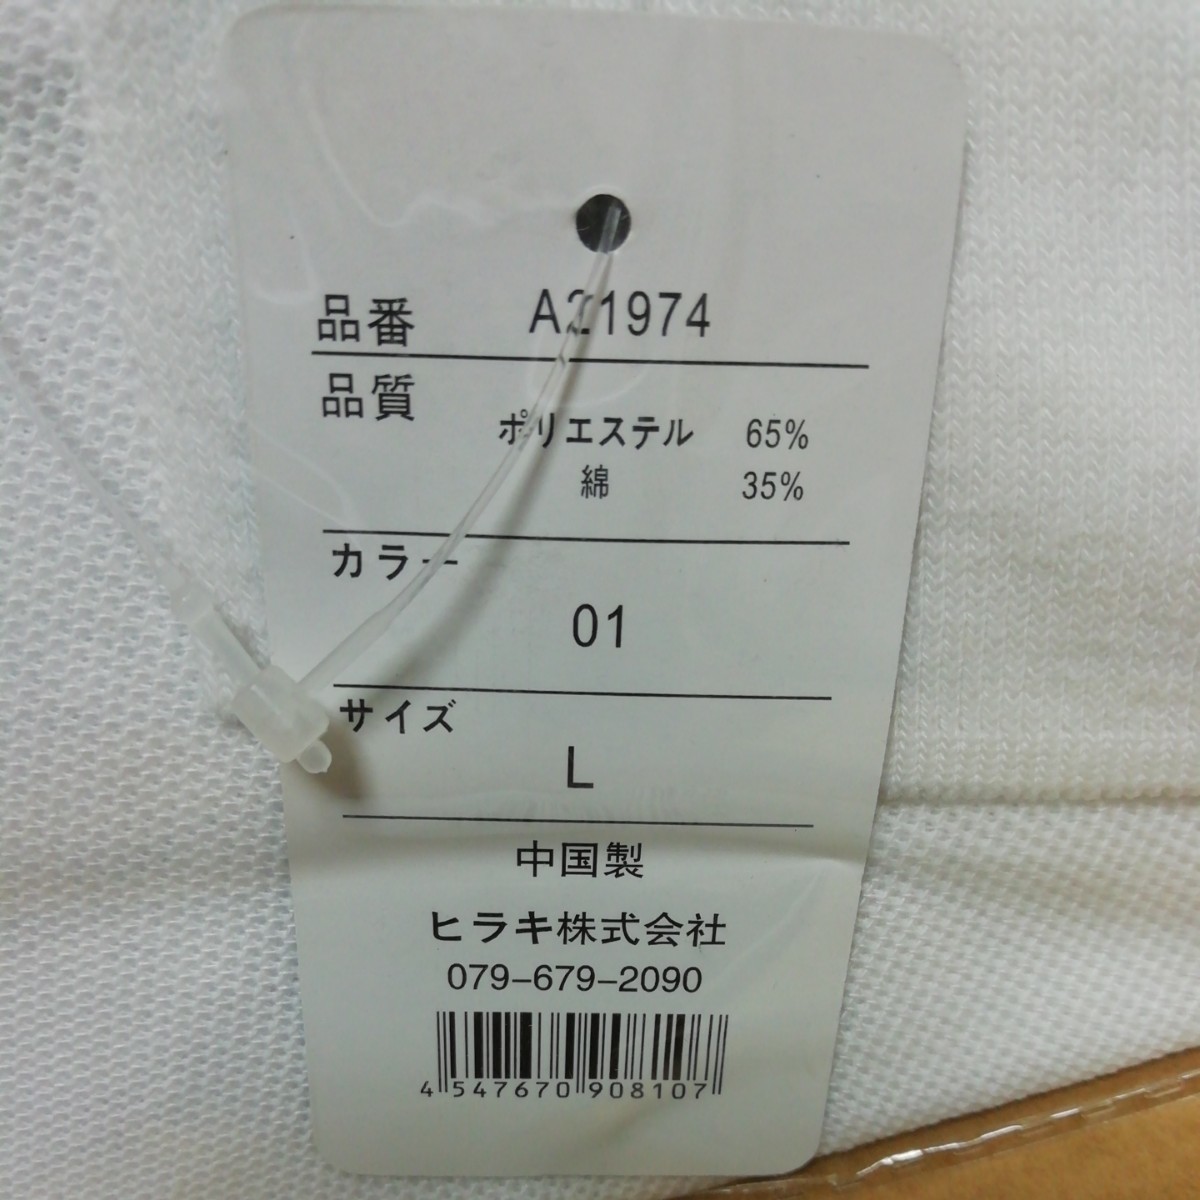 ポロシャツLサイズ + ソックス3足組(25~27cm)